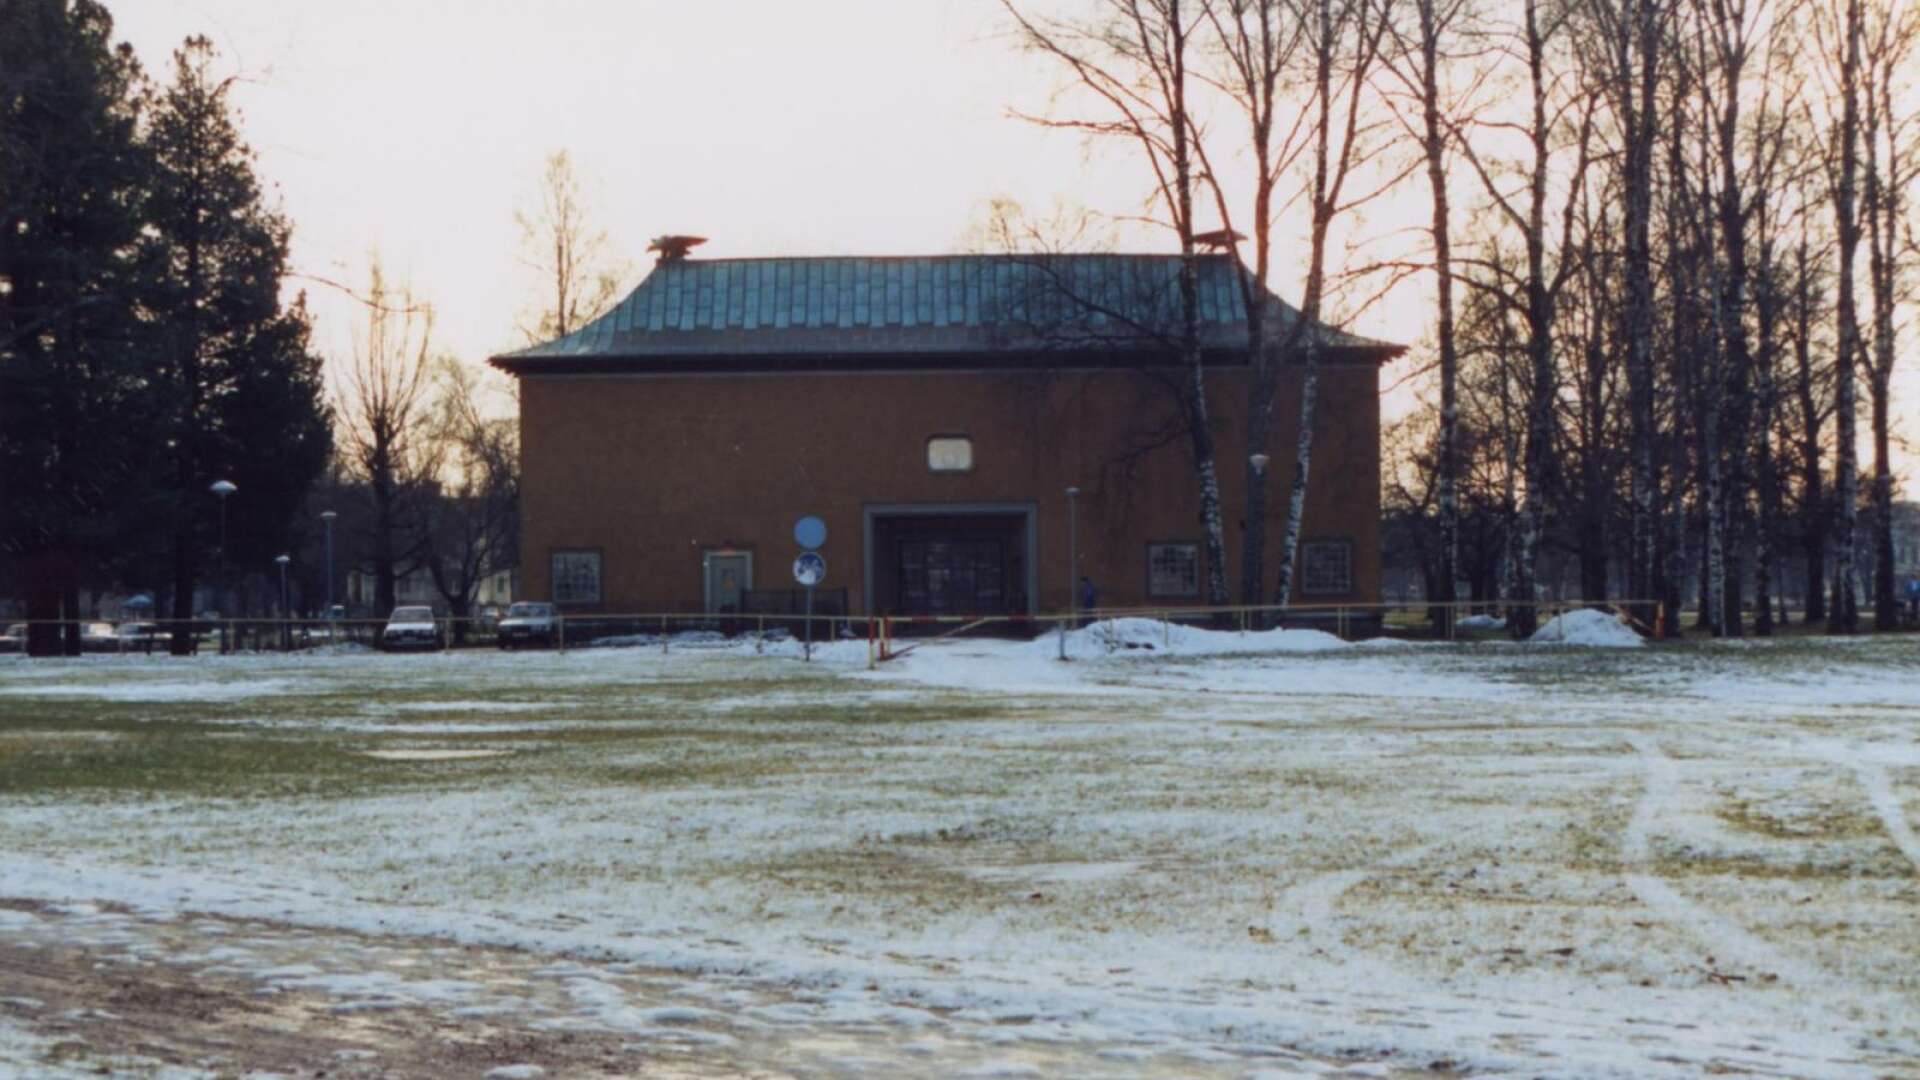 År 1926 fick arkitekten Cyrillus Johansson uppdraget att rita en museibyggnad på Sandgrund. Året innan hade de båda föreningarna Värmlands naturhistoriska och fornminnesförening och Föreningen Värmlands Länsmuseum gått samman och bildat Värmlands Fornminnes- och museiförening. 1929 invigdes Värmlands Museum, en stor händelse i Värmland det året. Bilden är från 1988.